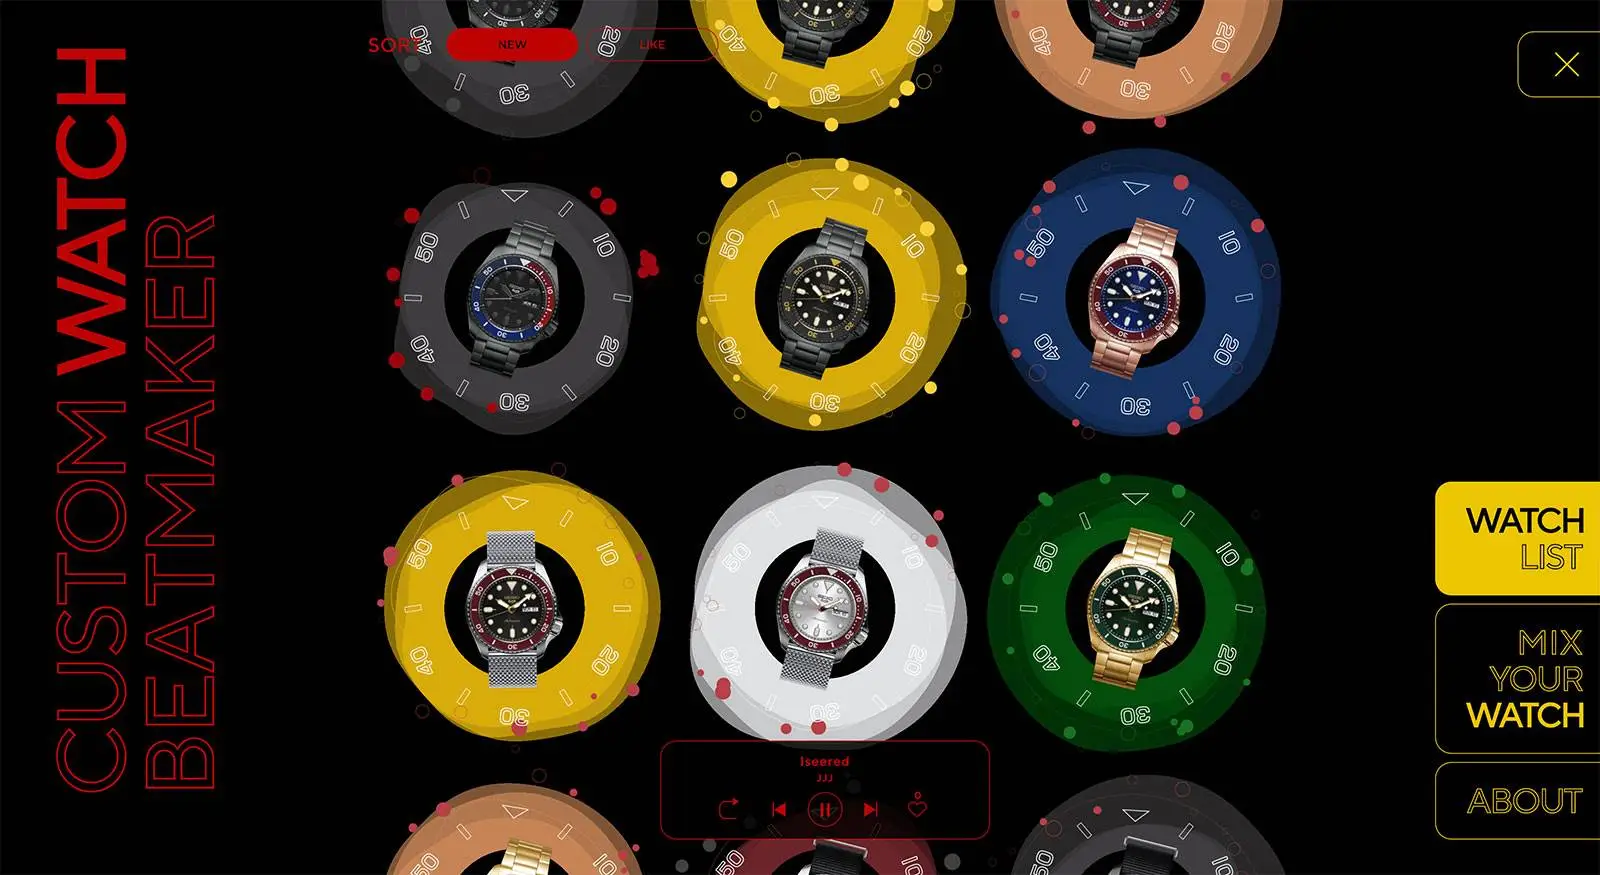 Seiko 5 Sports Custom Watch Beatmaker Limited Edition - wygrał Pog(ue)